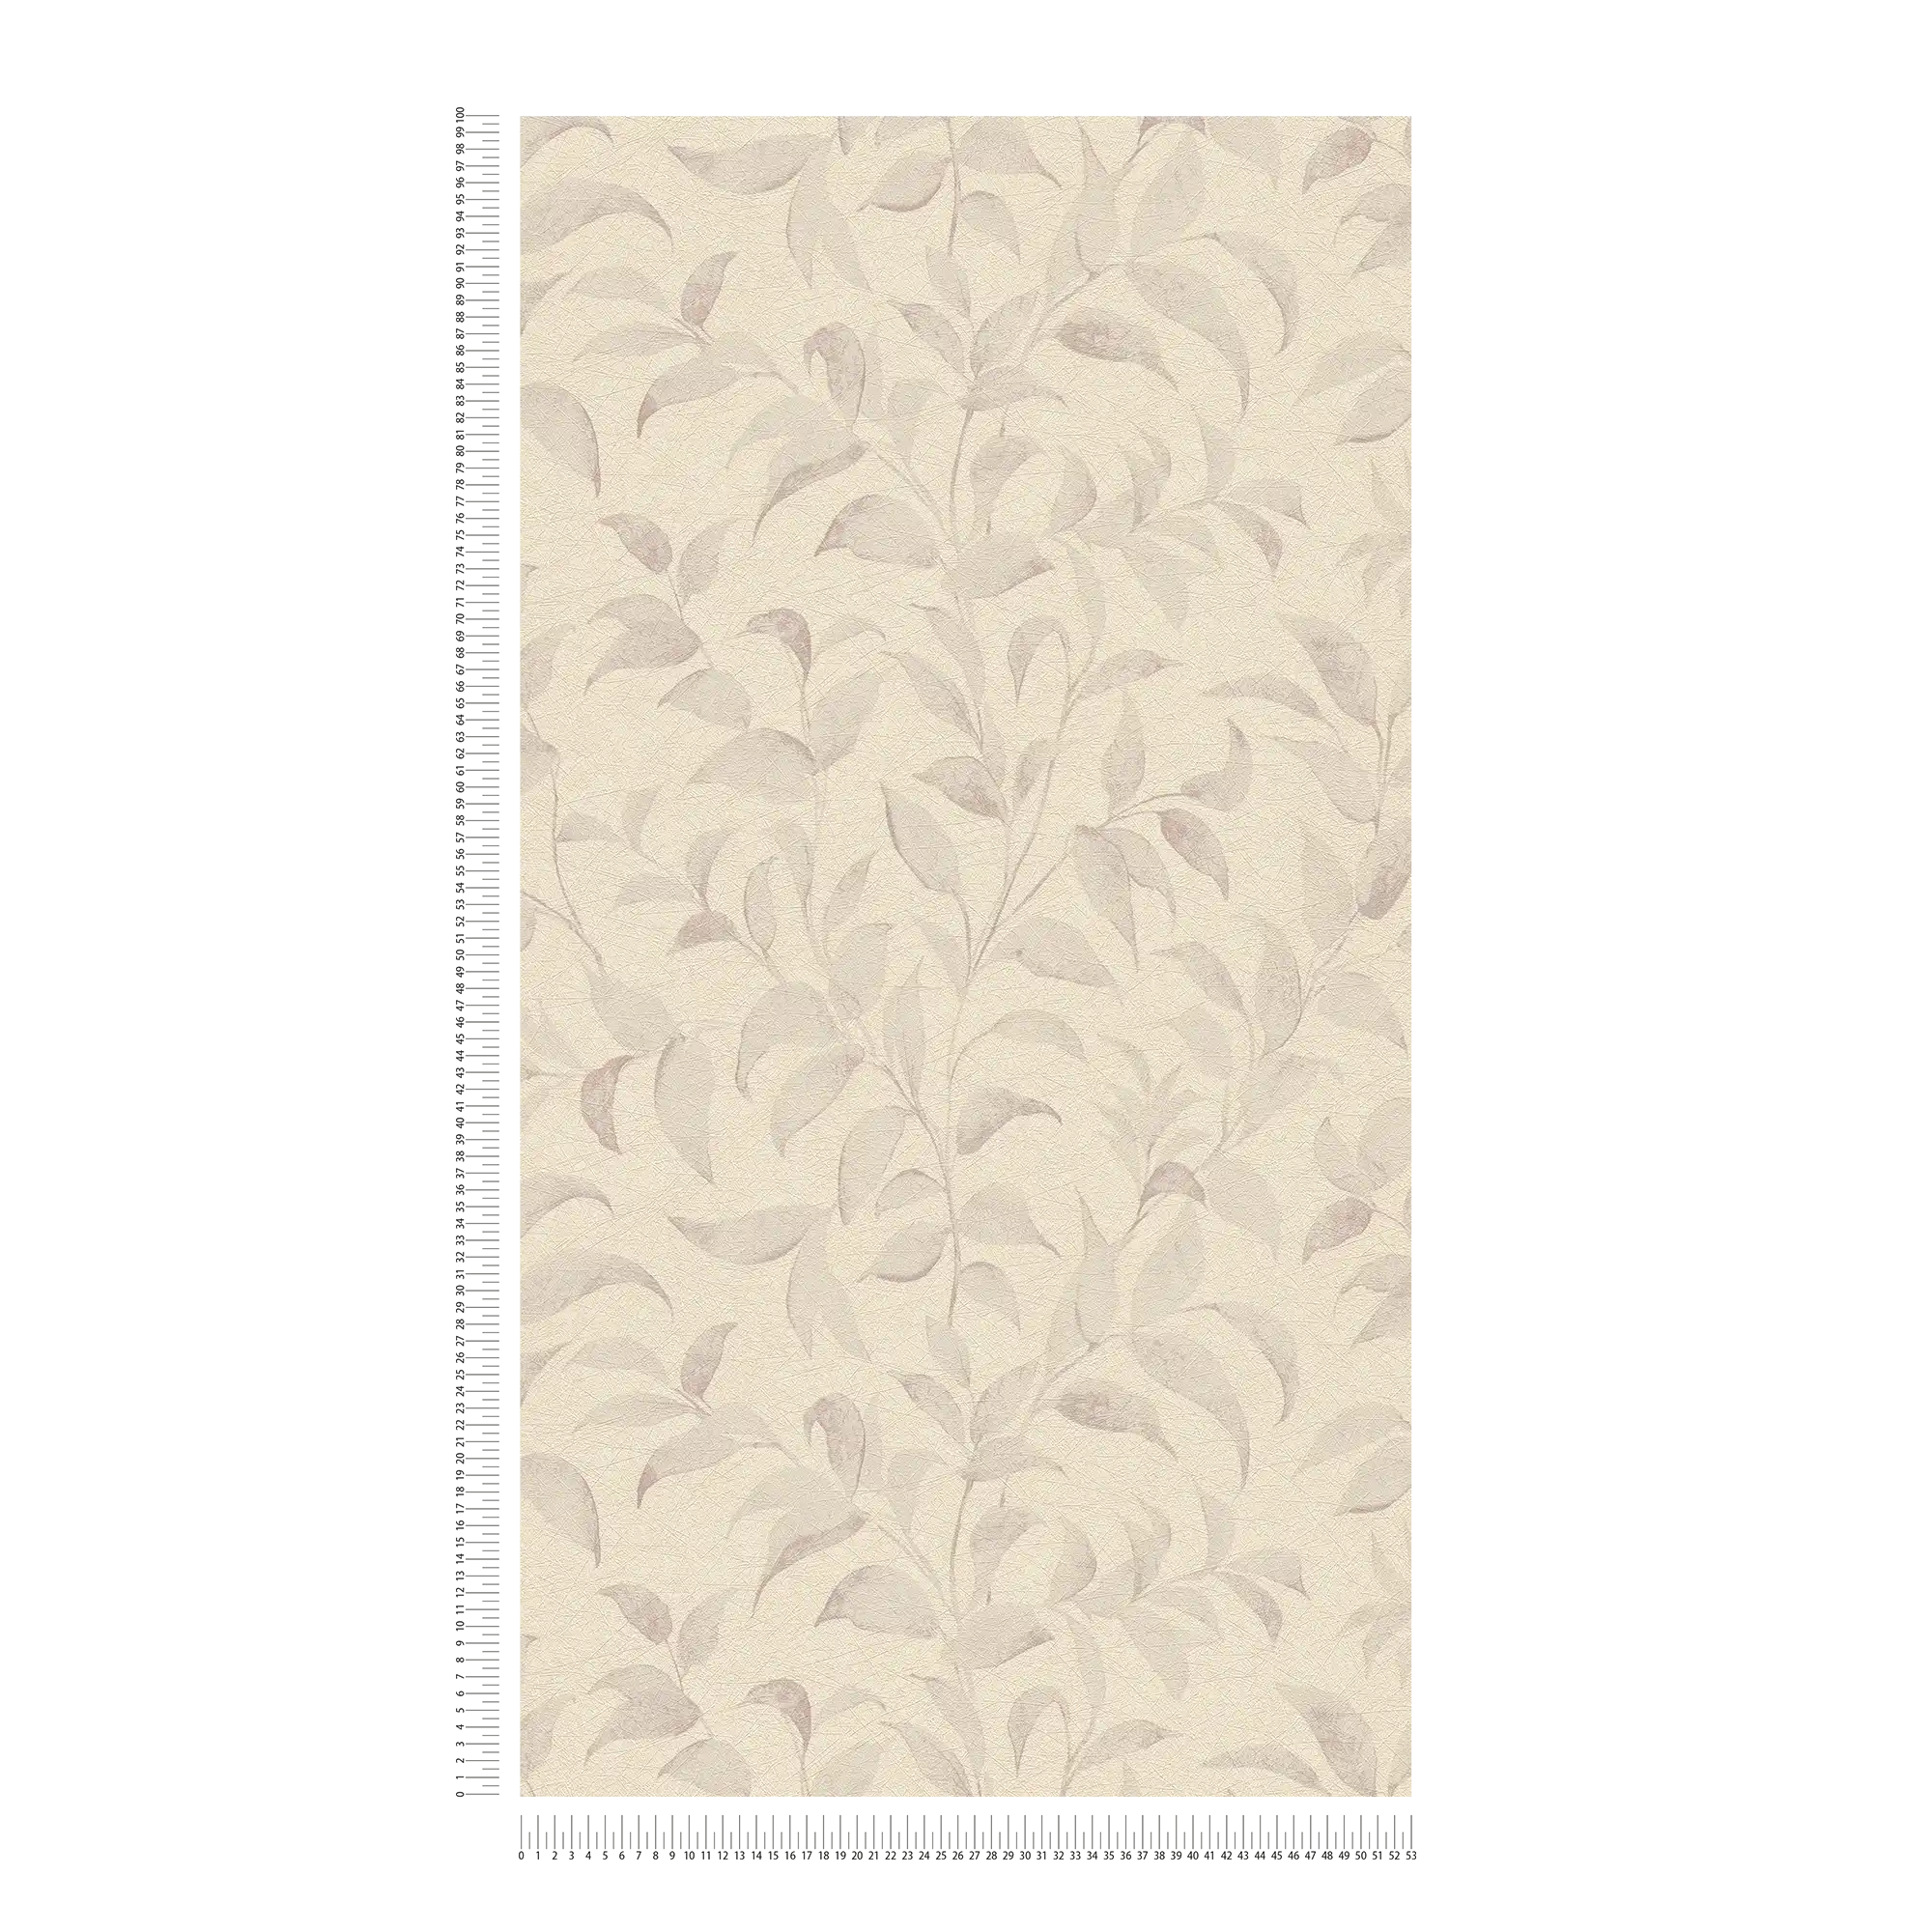             Florale Tapete mit Blättern schimmernd strukturiert – Grau, Silber
        